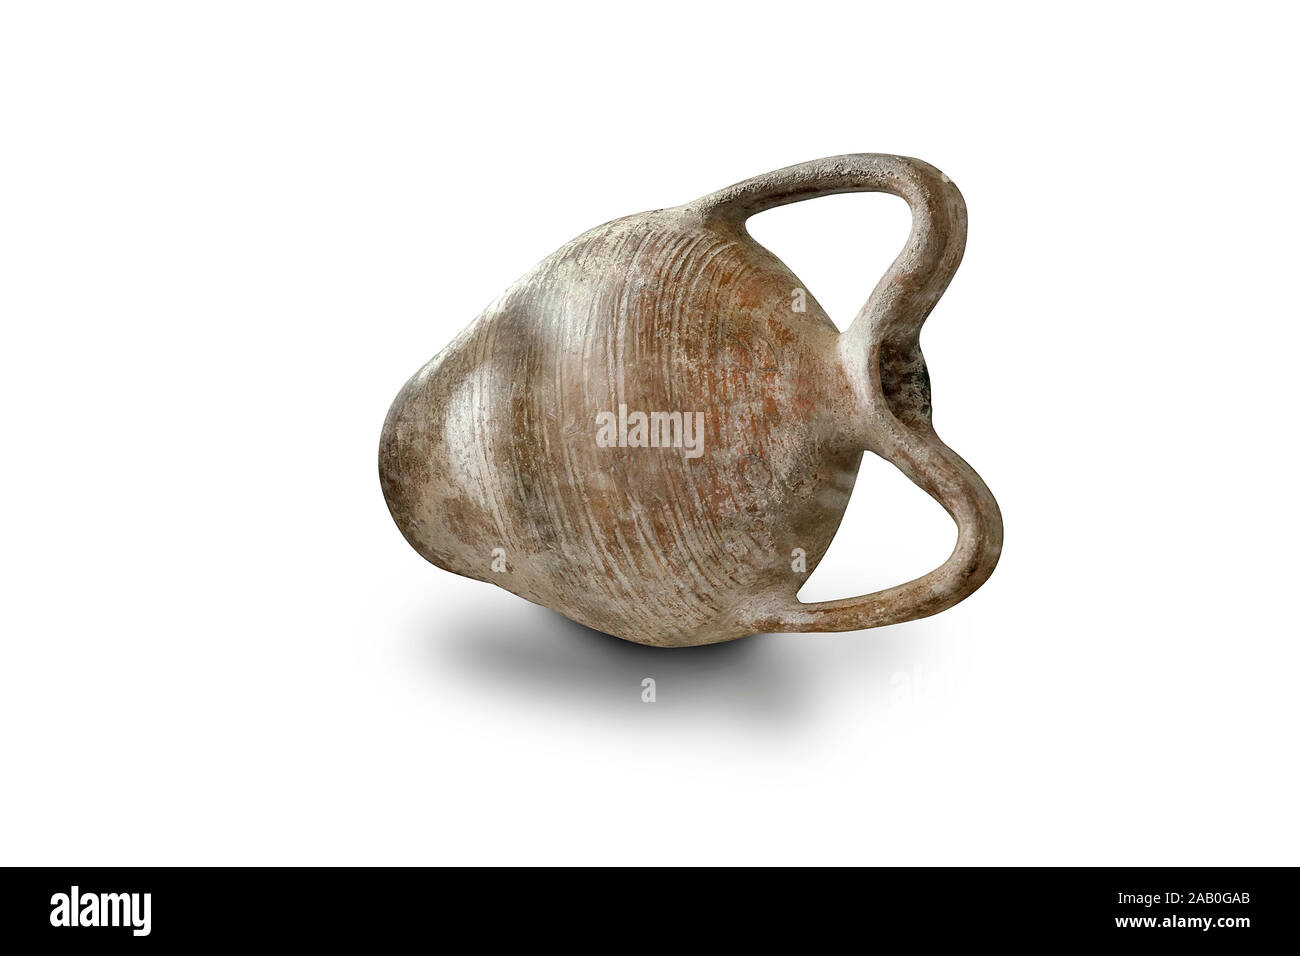 Alte mittelalterliche Amphora (Schiff). 12. und 13. Jahrhunderts. Nördlichen Schwarzen Meer Küste. Amphoren wurden für die Lagerung von verschiedenen Produkten verwendet, sowohl flüssige Ein Stockfoto